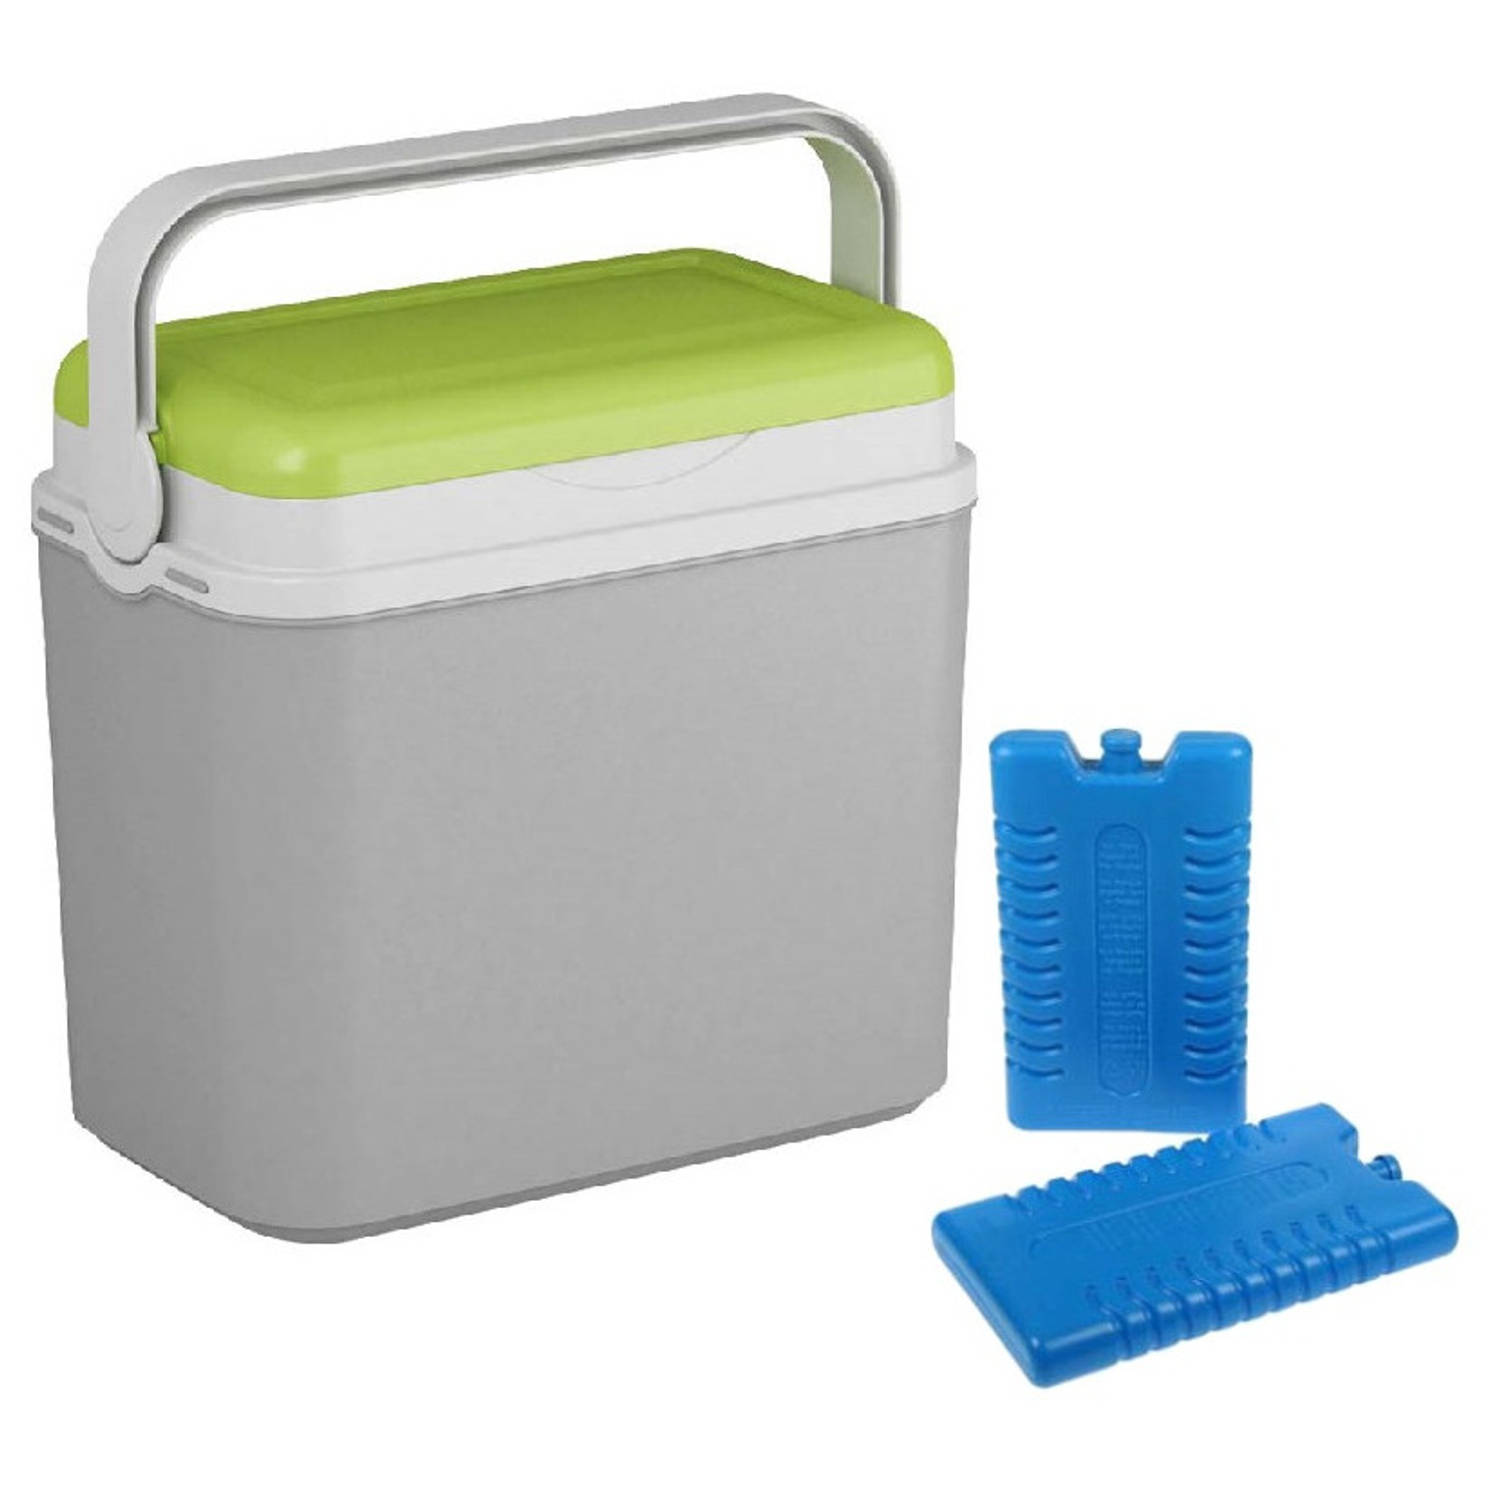 Koelbox grijs/groen 10 liter 30 x 19 x 28 cm incl. 2 koelelementen - Koelboxen